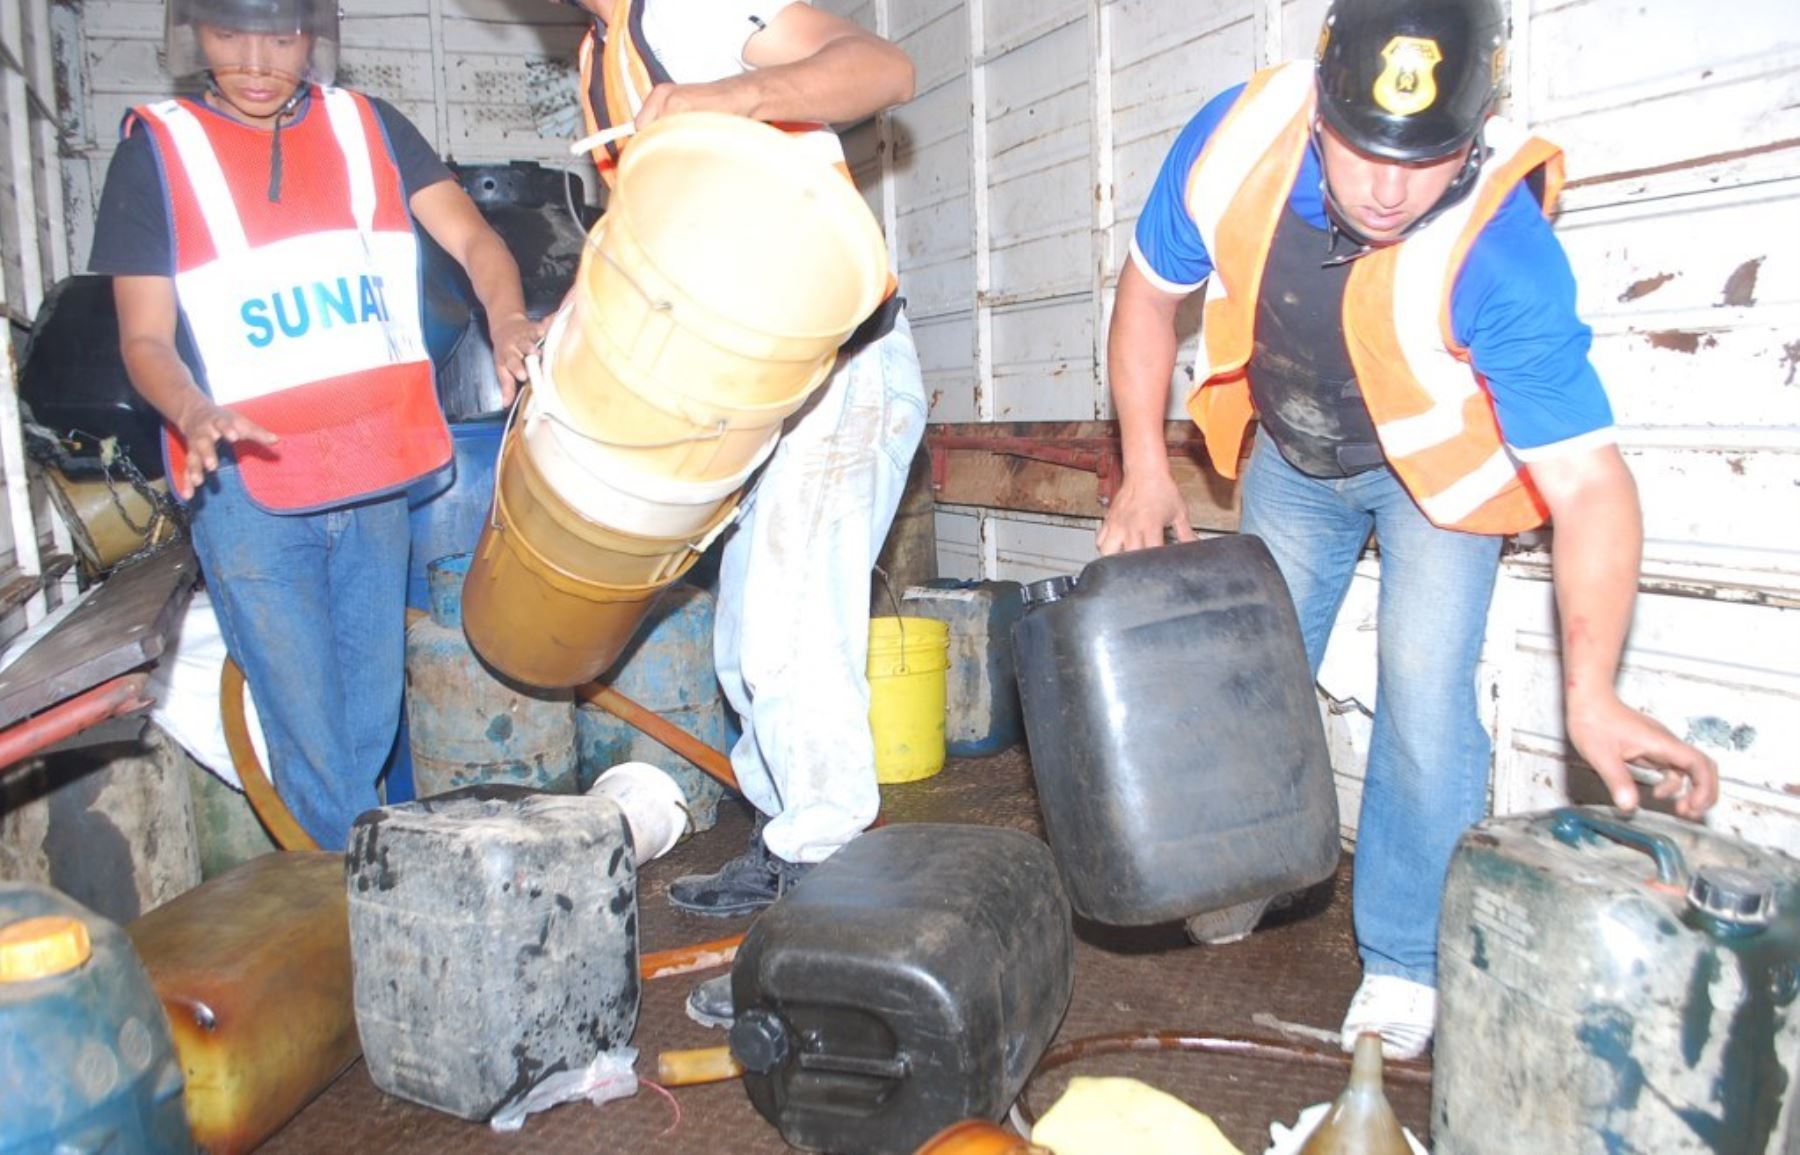 Inspectores de la Sunat intervinieron una embarcación que transportaba combustible destinado a la minería ilegal.